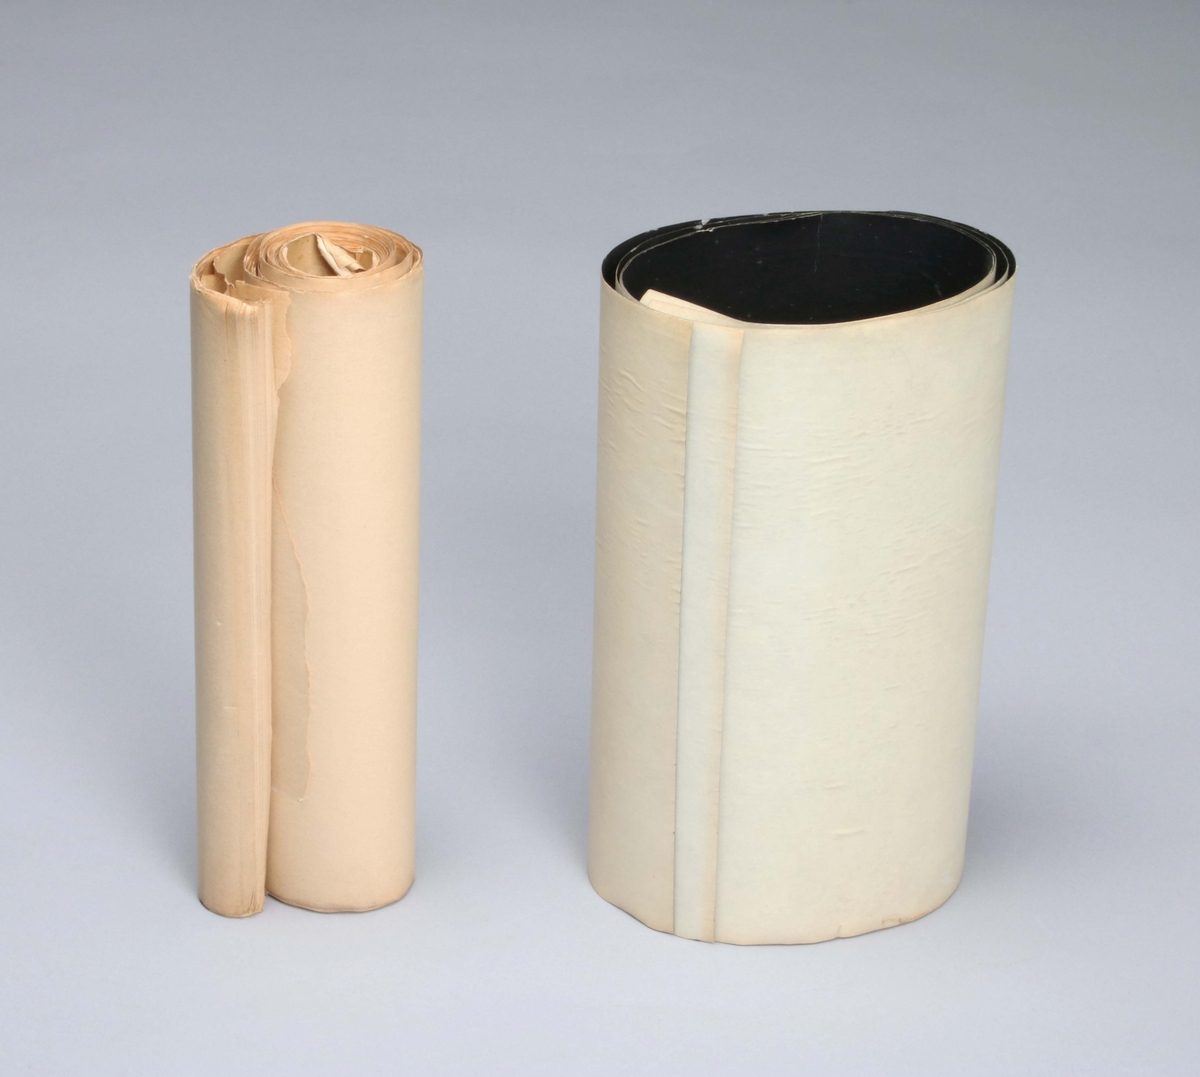 Kontrollhaspel. På en rektangulär ekplatta, monterad en svart, genombruten trumma, som på höger sida, har en kedja med handvev för drivning.
Veven förbinds med en lång, skjutbar, gängad stav, där garnet löper, som rullas upp på trumman. På vänster sida, två vertikala stänger, en för garnrulle. Medföljer, två svarta papperskartor och en bunt beigabruna papperskartor, som fästes runt trumman. Märkt med etikett: N. ZIVY & Co BASEL. Proveniens Verner Frang AB, Borås.

Funktion: För att kontrollera garnets jämnhet

Bolaget "Verner Frang AB" verkade som agent och distributör av industrigarner till den svenska textilindustrin och representerade ett flertal spinnerier i Europa såsom Enka Glanzstoff, Marzotto, Kunert med flera.

I början av 1980-talet såldes bolaget till invenstmentbolaget Parlamentet som sedermera tillsammans med ytterligare fyra textilföretag bildade Percalgruppen och introducerades på börsen.